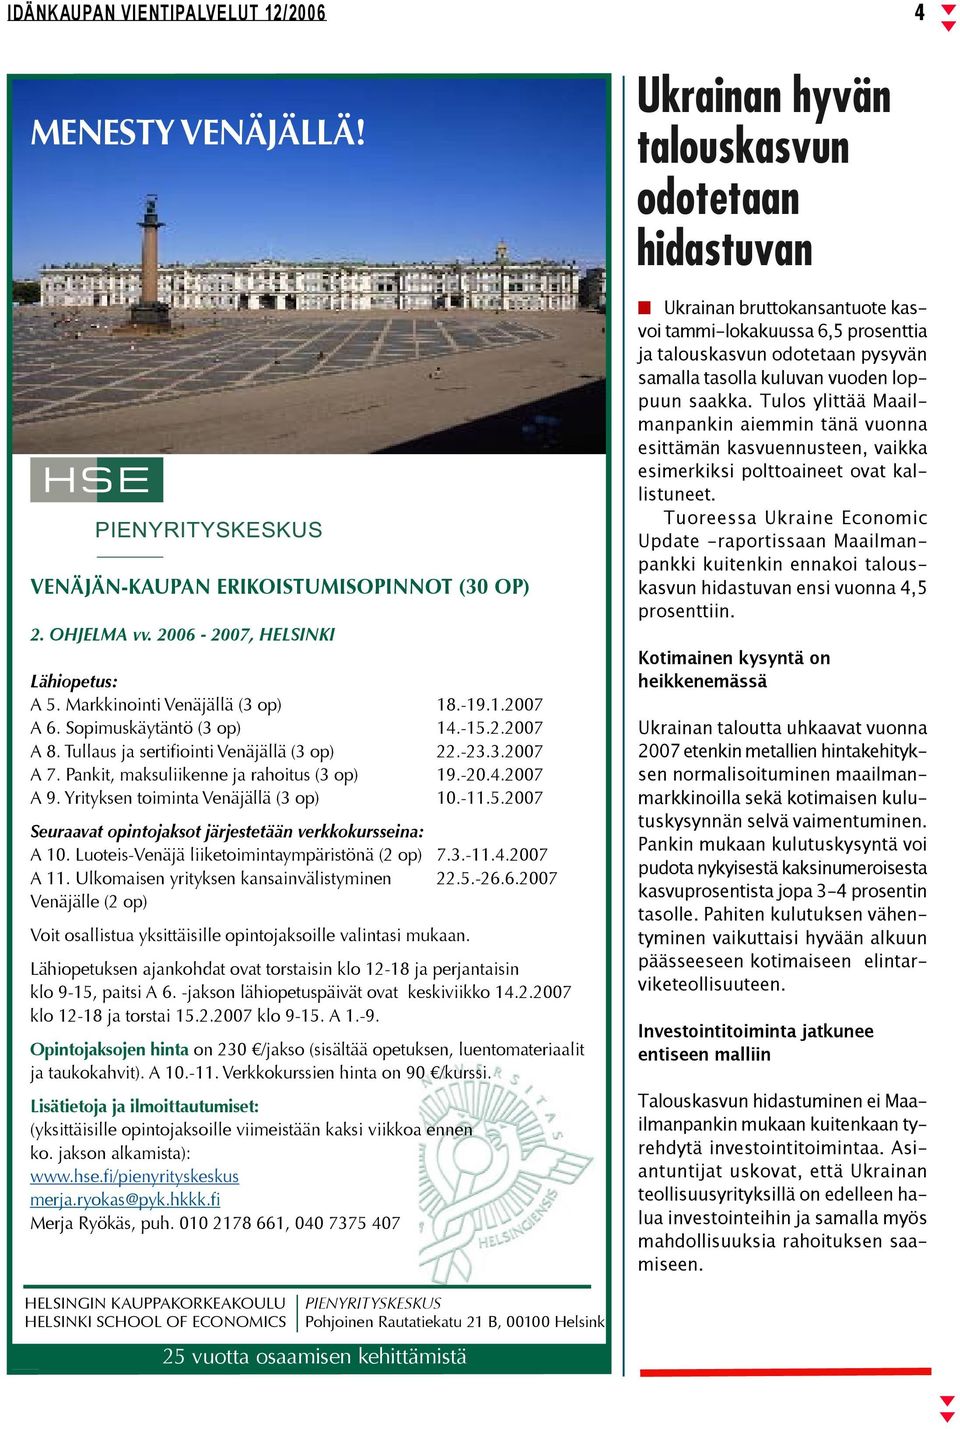 2007 Seuraavat opintojaksot järjestetään verkkokursseina: A 10. Luoteis-Venäjä liiketoimintaympäristönä (2 op) 7.3.-11.4.2007 A 11. Ulkomaisen yrityksen kansainvälistyminen 22.5.-26.